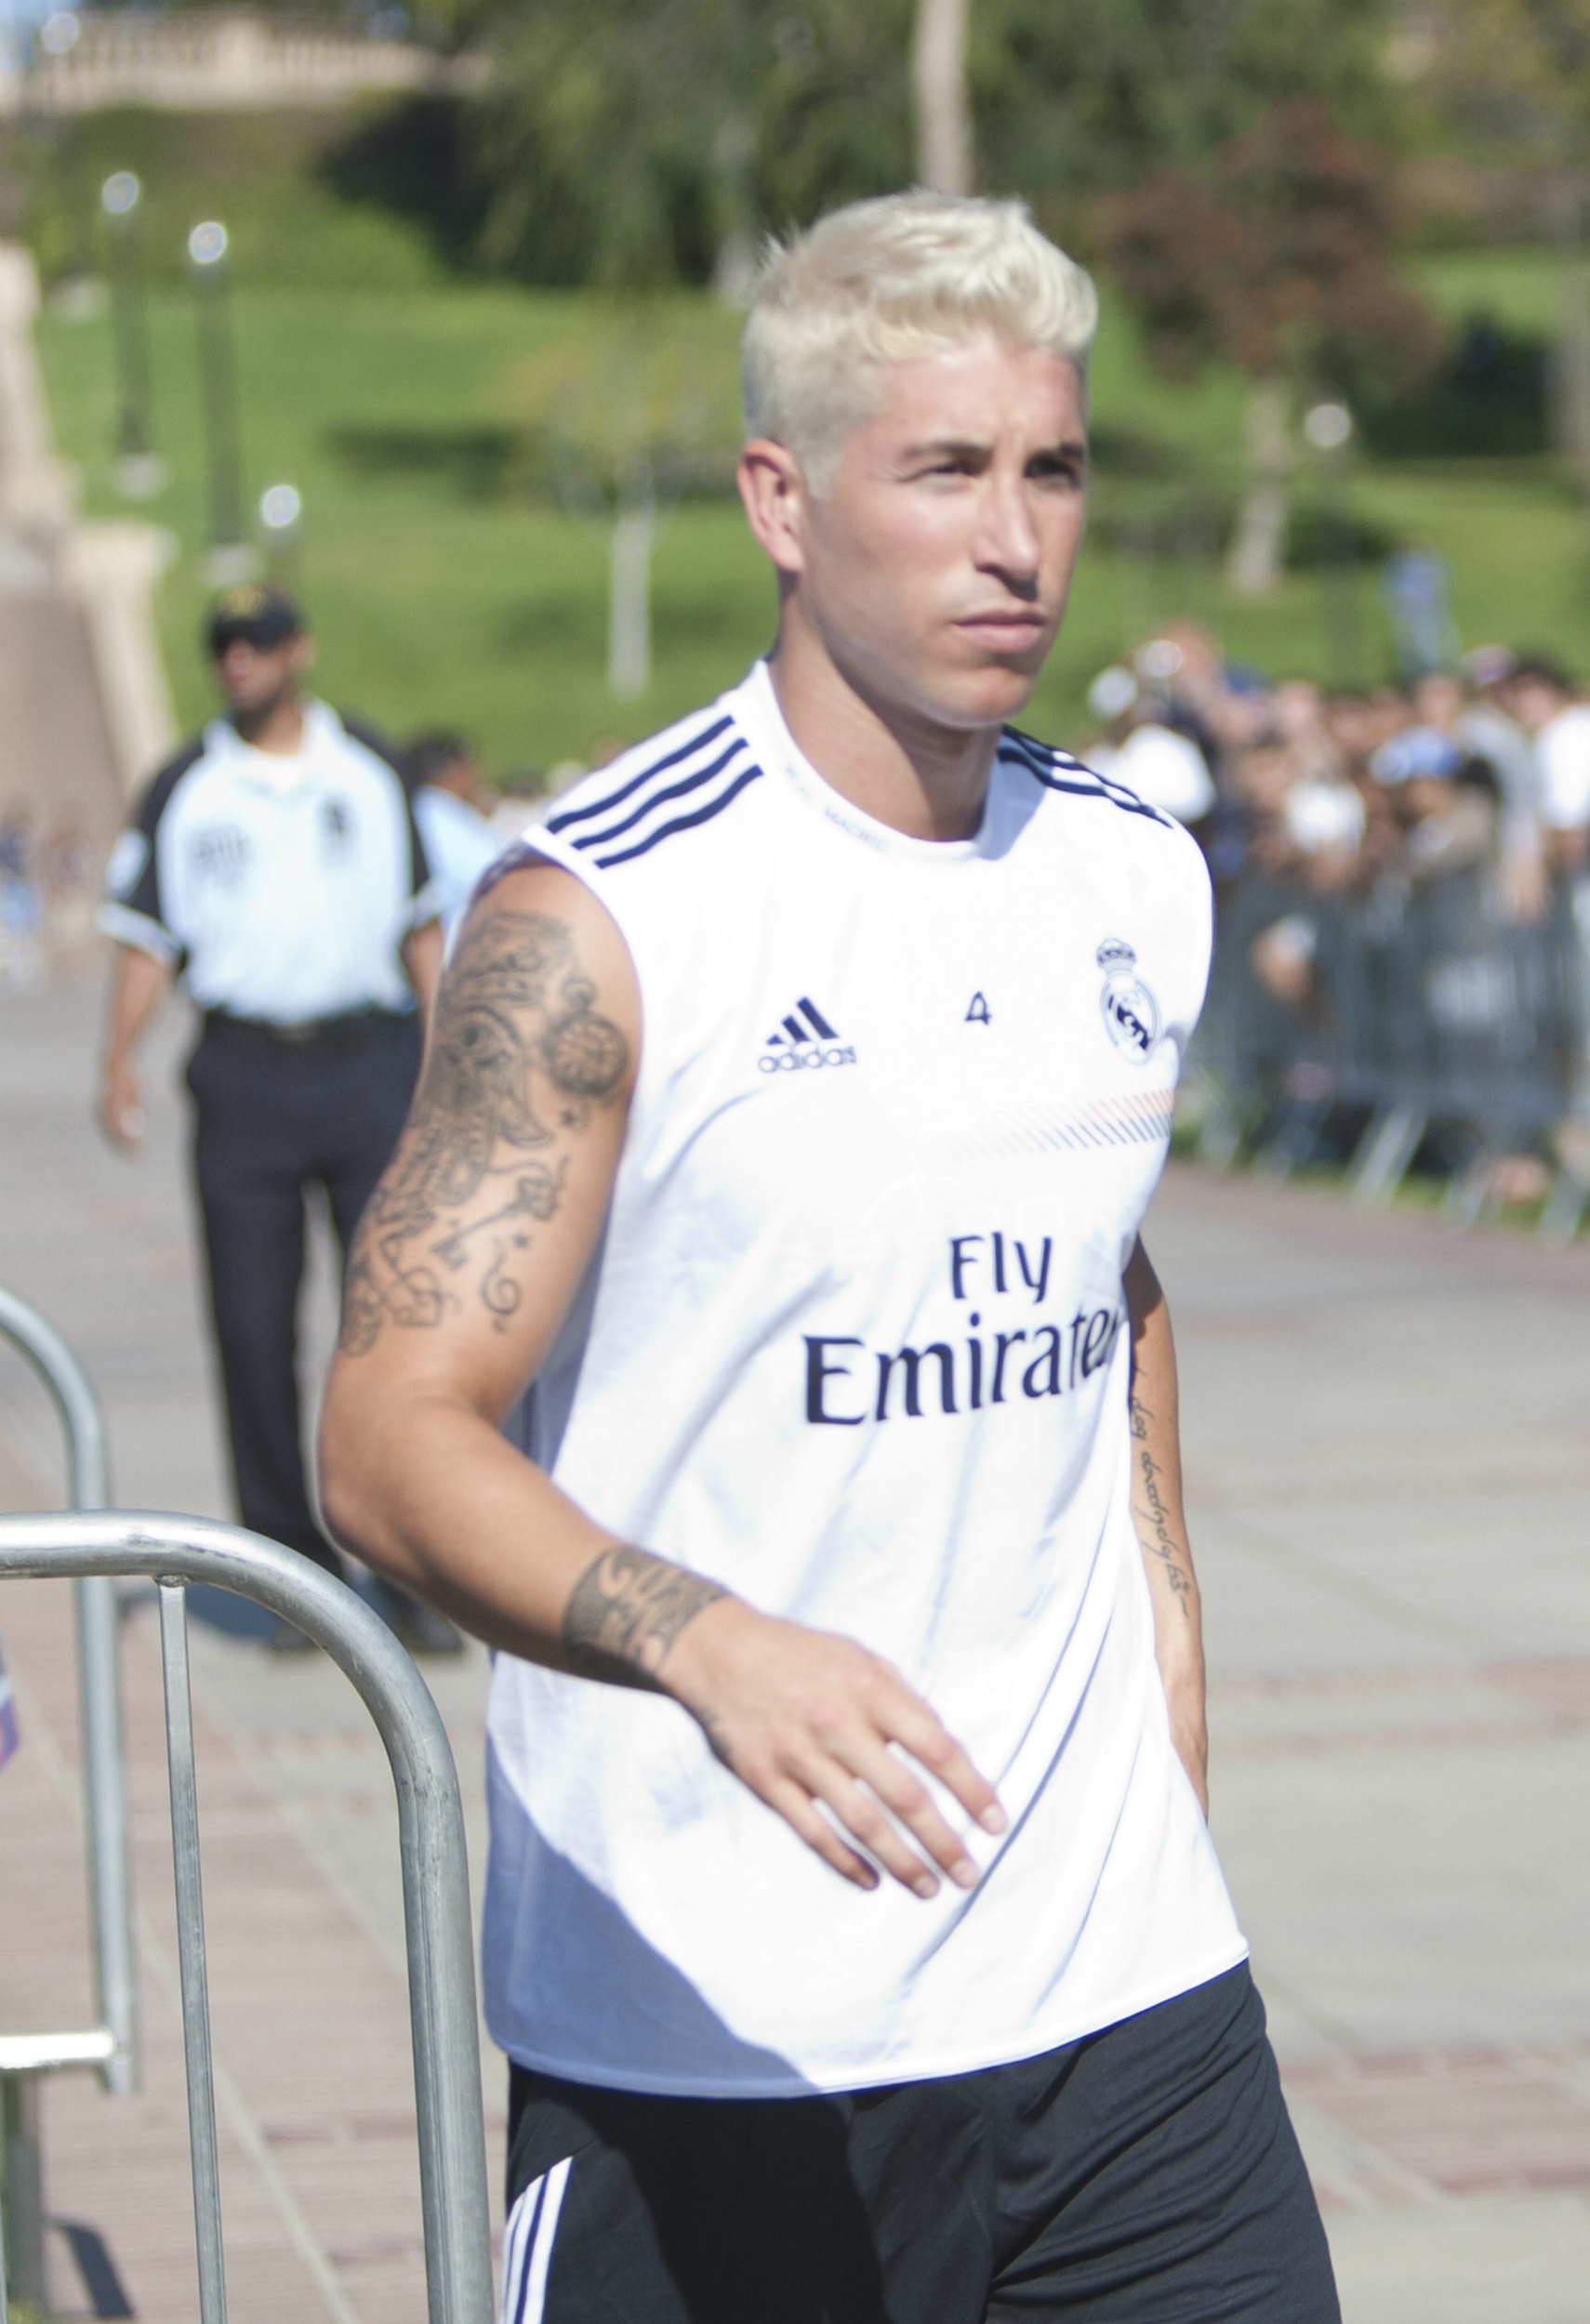 El jugador del Real Madrid Sergio Ramos en el campus de la Universidad de California (UCLA) en Westwood, Los Ángeles (EE.UU.) en 2013. EFE/ARMANDO ARORIZO